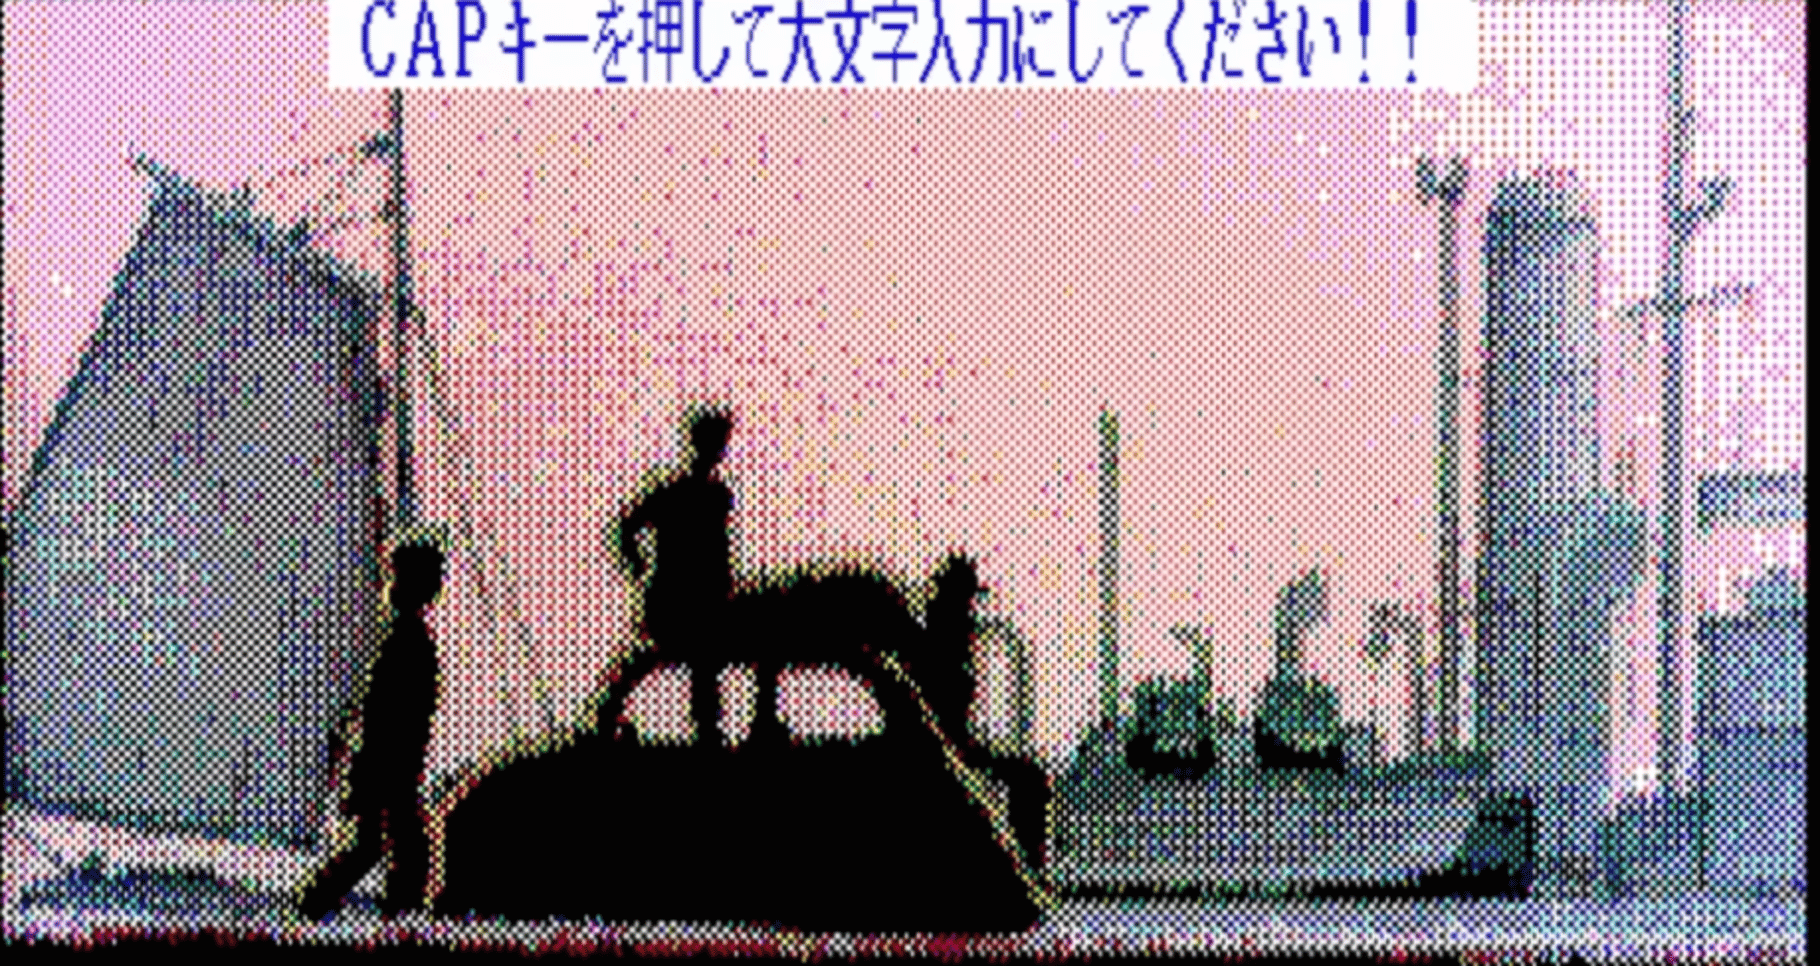 Lupin the Third: Cagliostro no Shiro screenshot